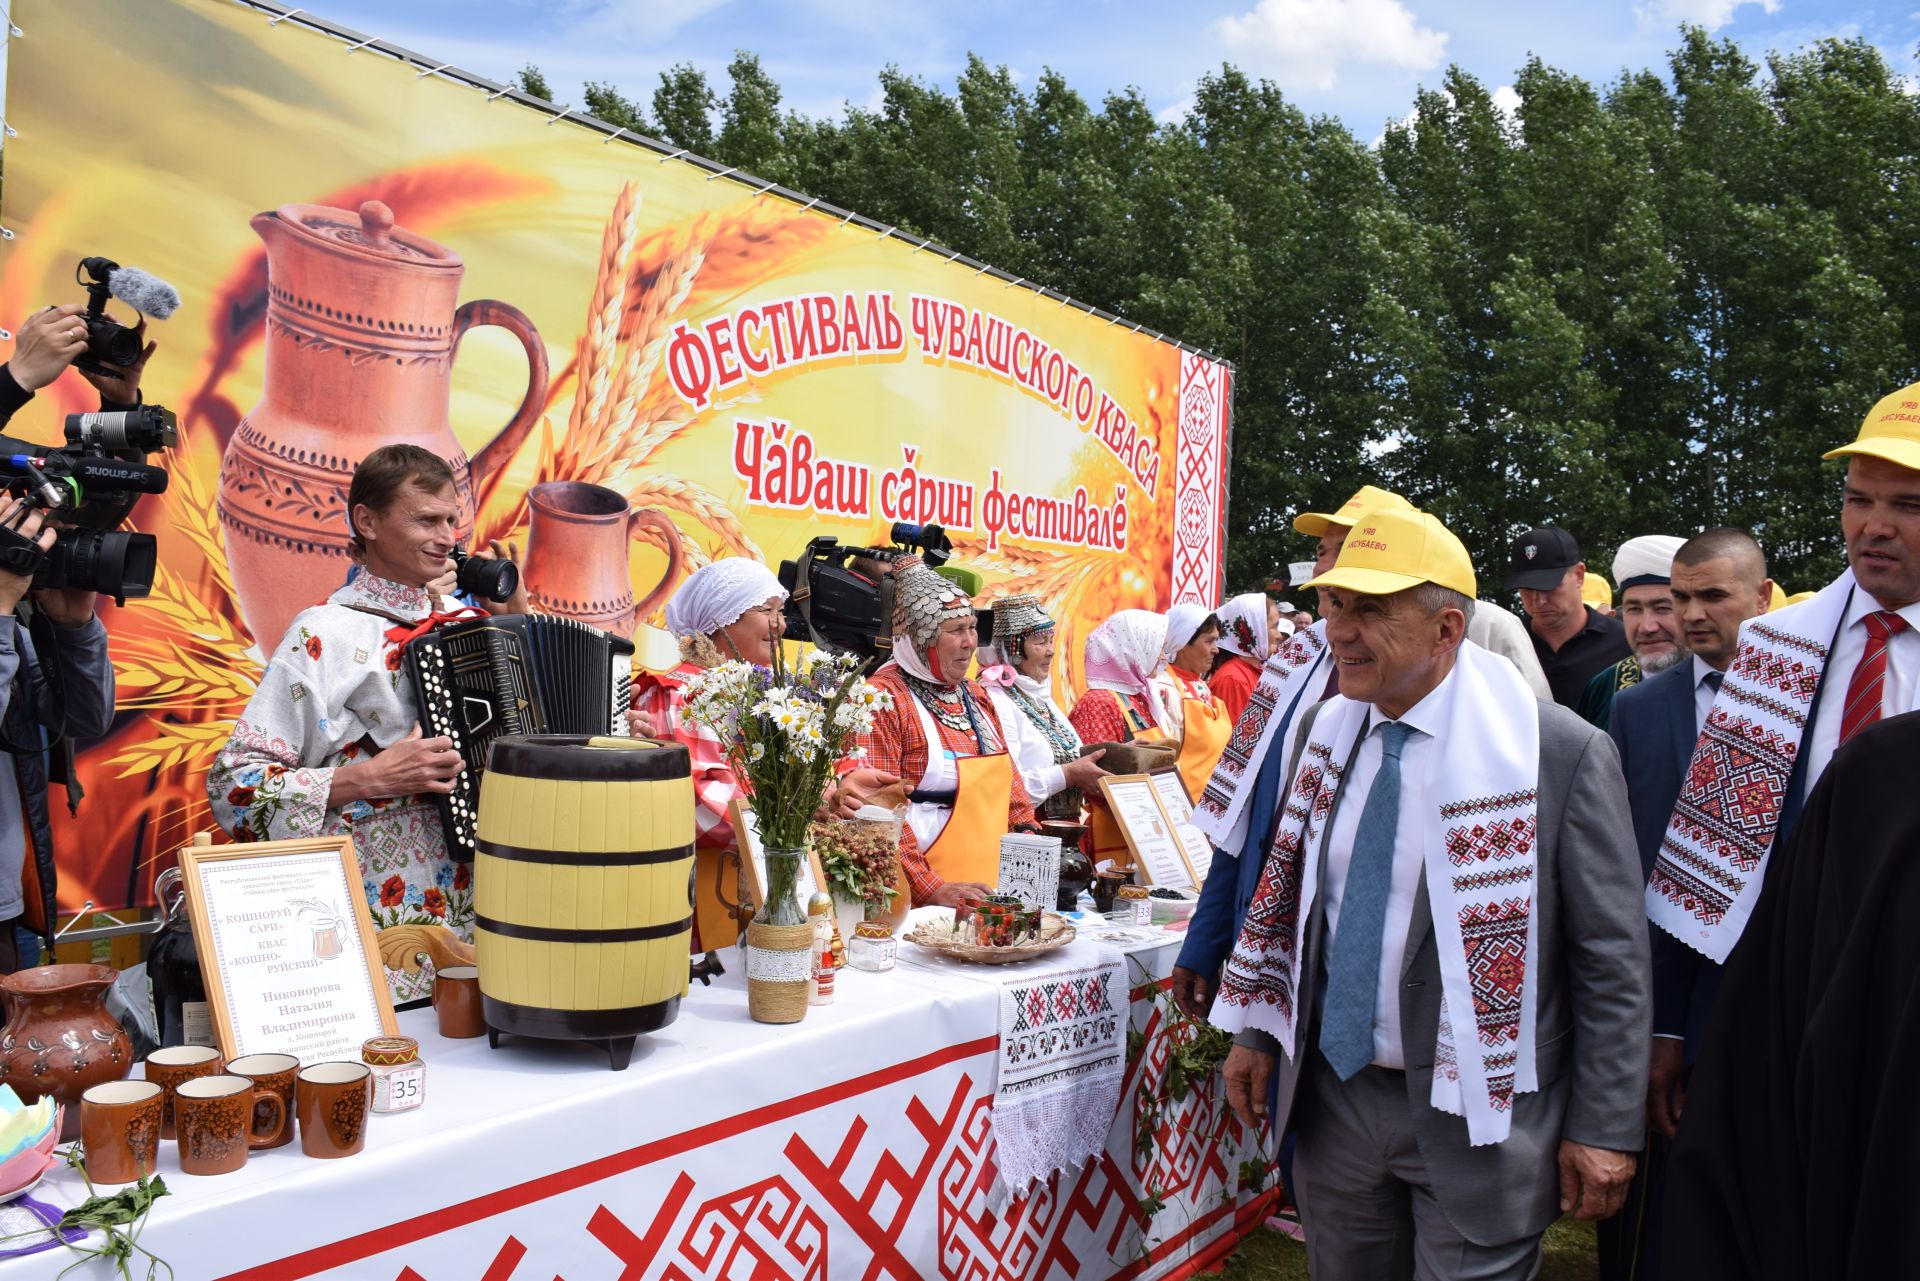 Нурлатцы  на республиканском празднике чувашской культуры «Уяв»  – в соседнем районе